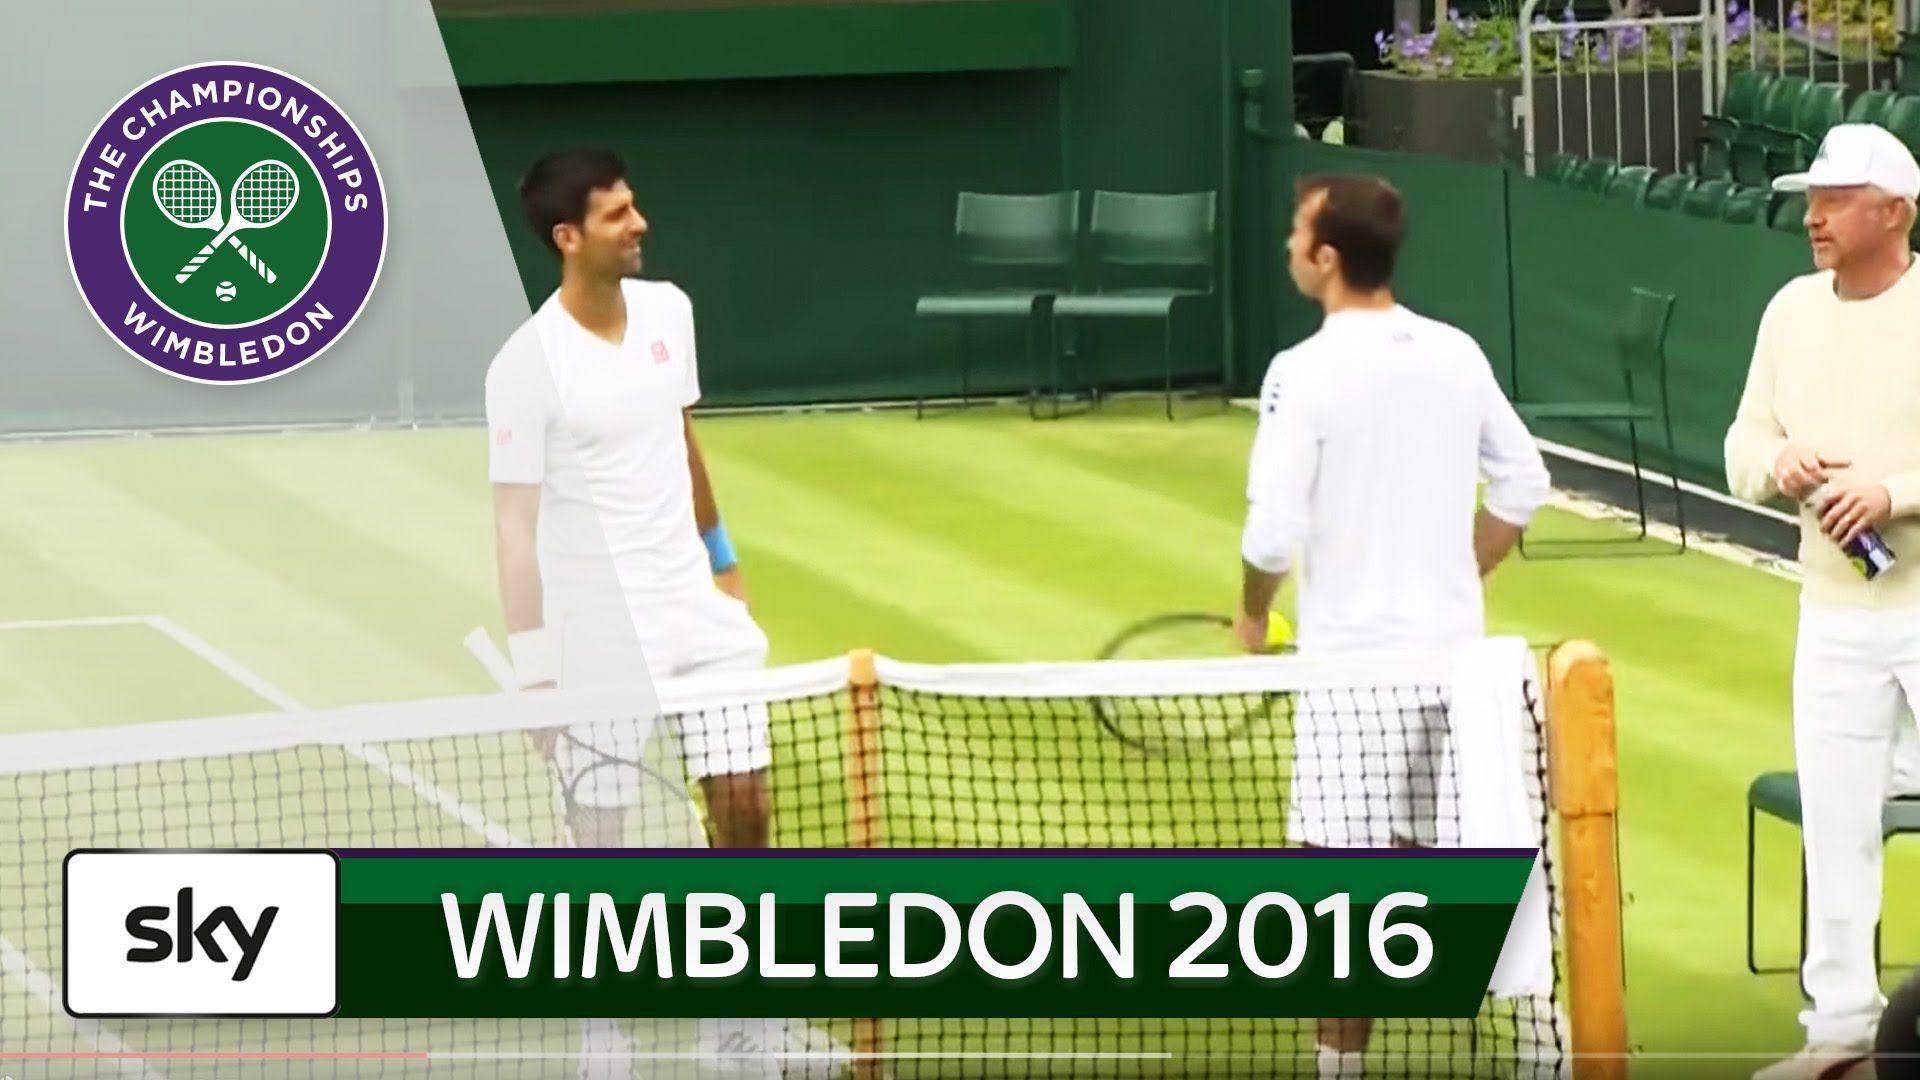 Djoker" und Boris schlagen in Wimbledon auf. Wimbledon 2016